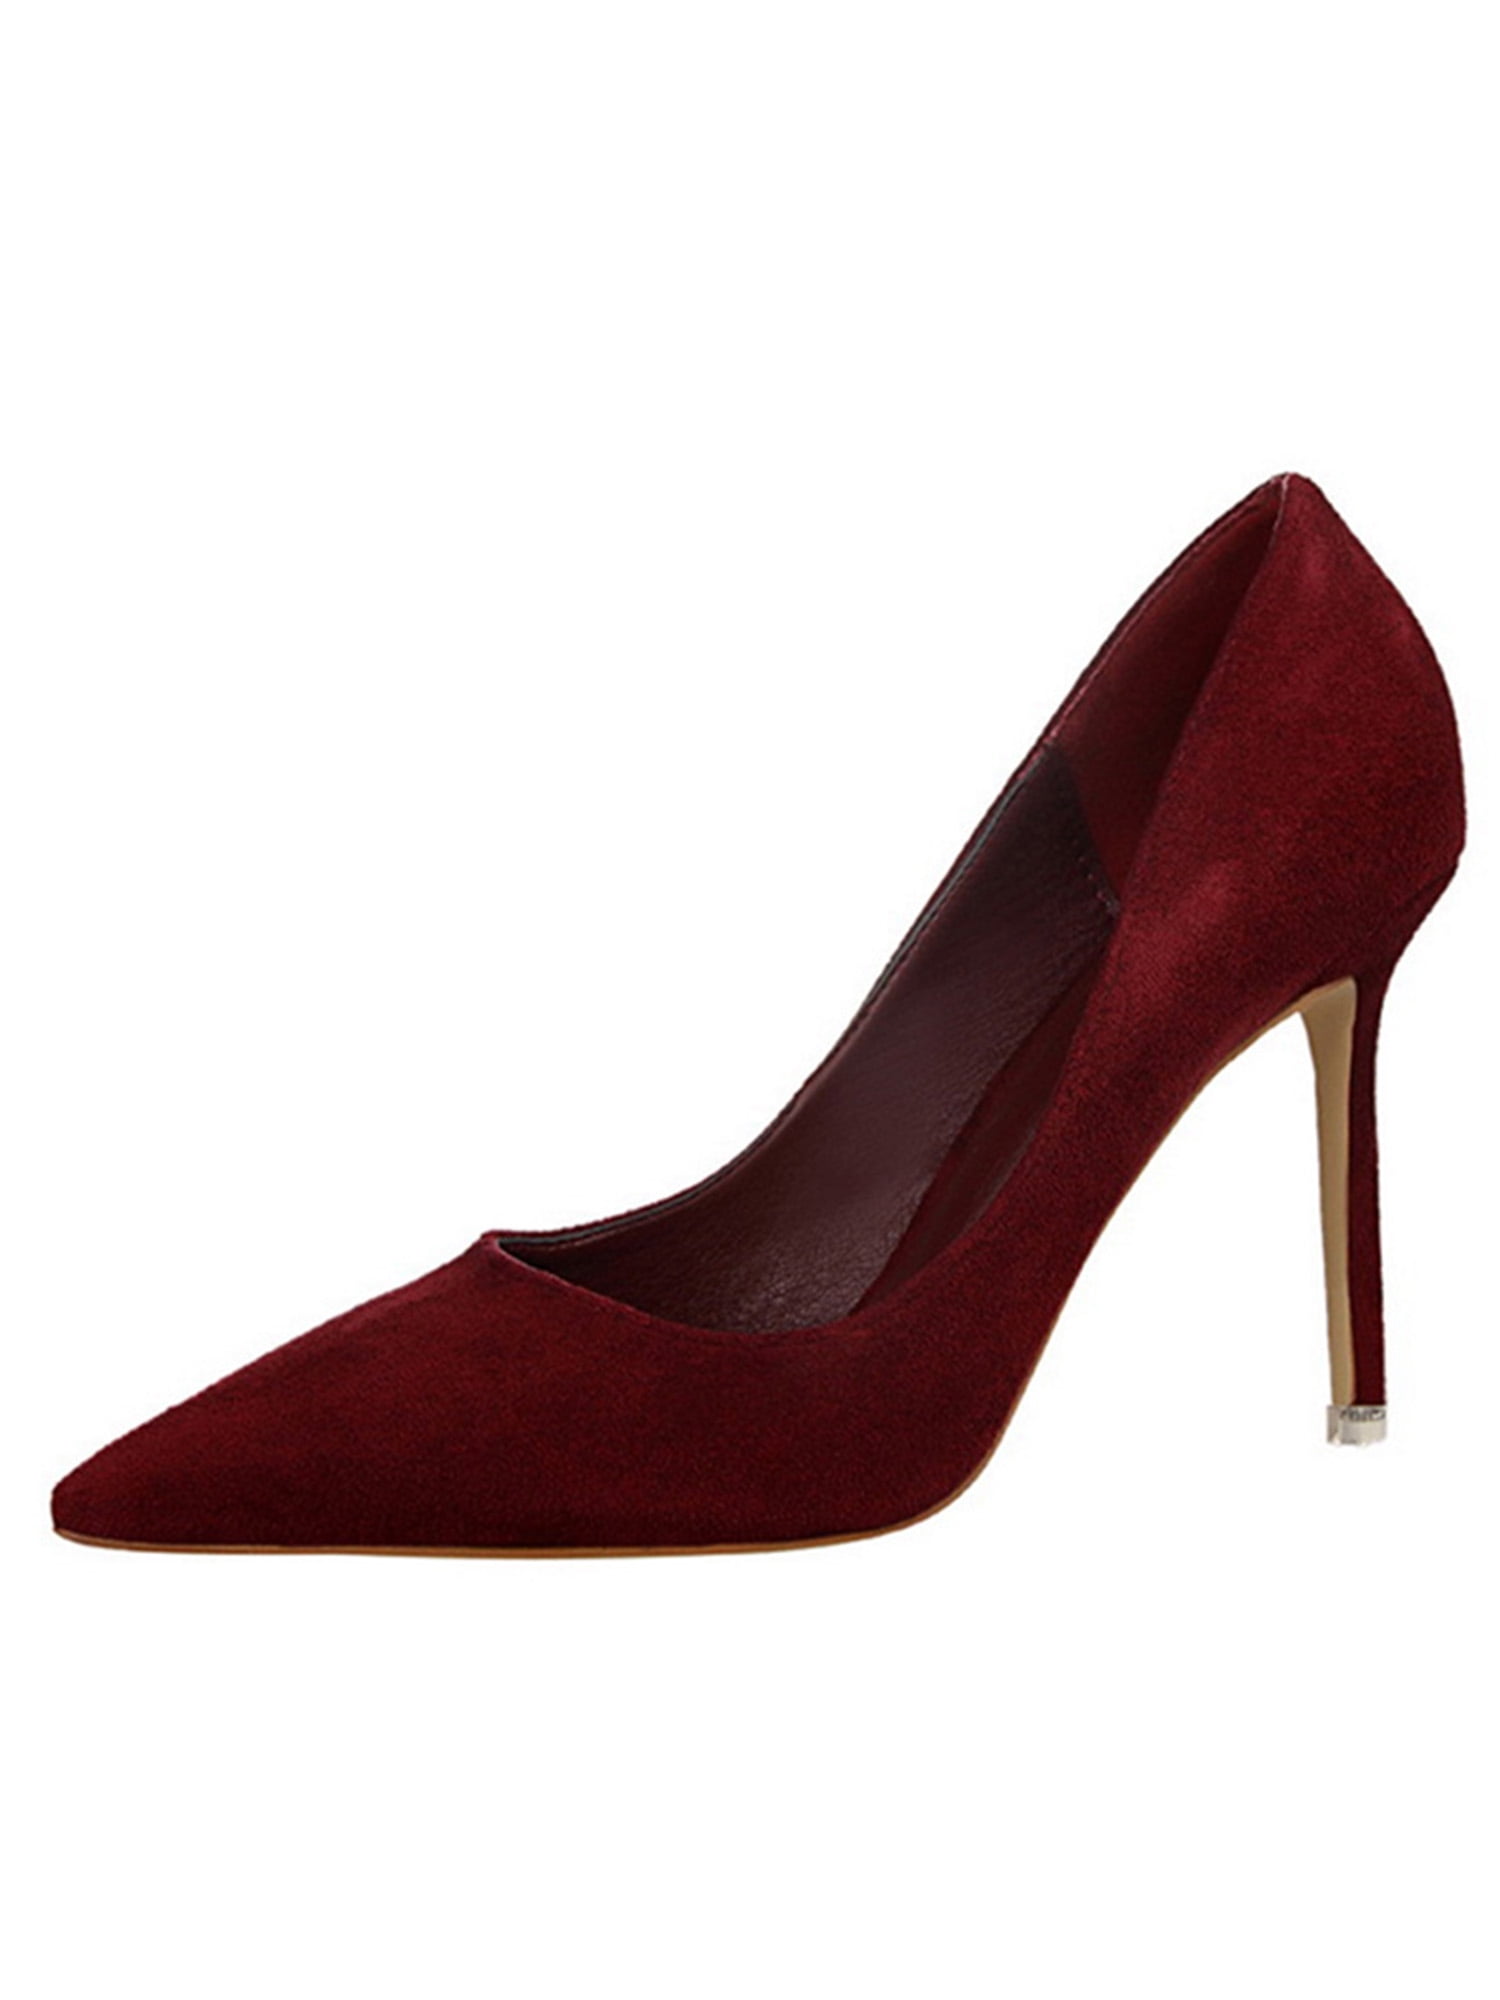 Mix No. 6 Red Suede 4 1/2-inch Platform Heels Size 6.5 | eBay